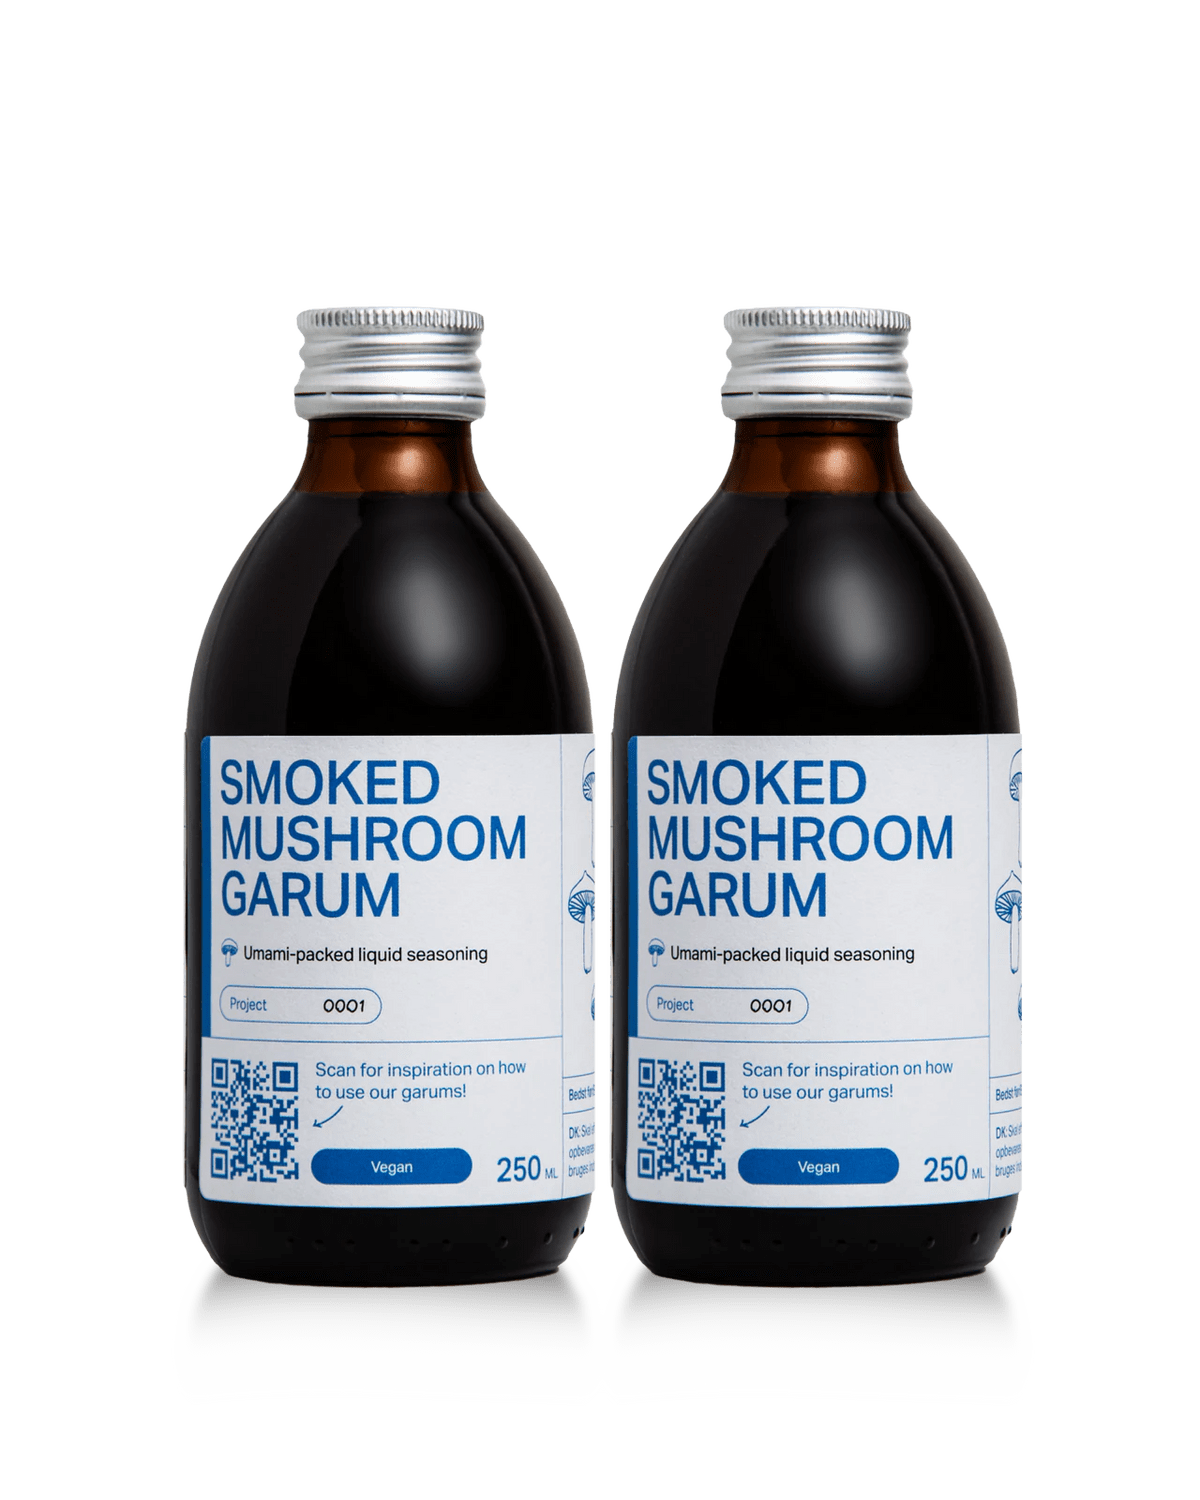 Noma Smoked Mushroom garum